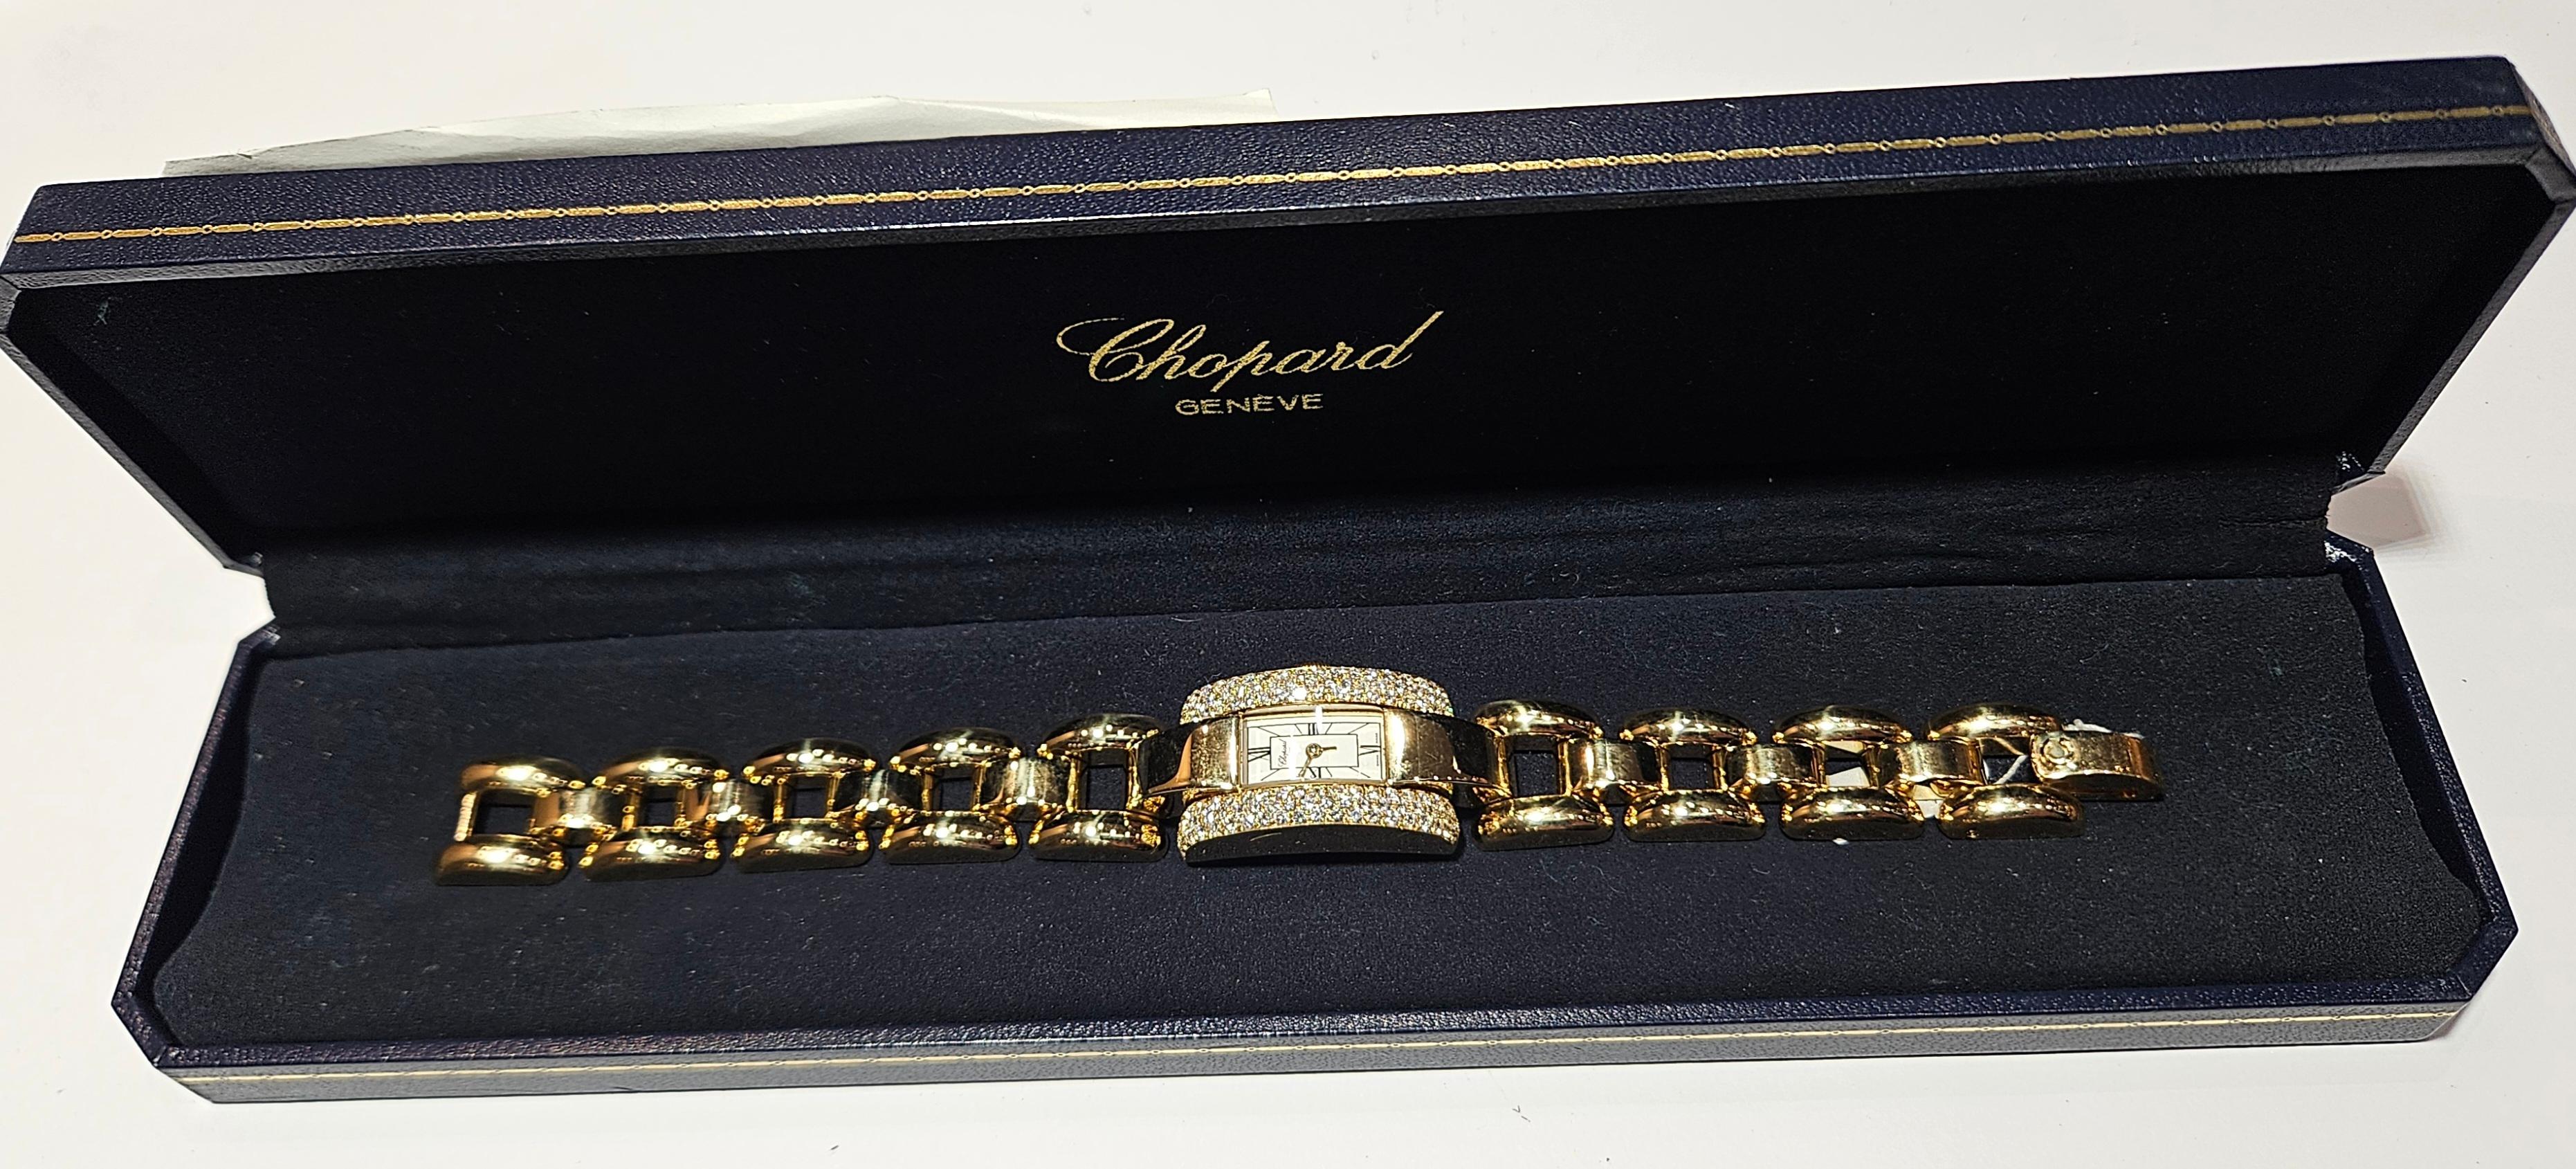 18 Kt. Gold & Diamonds Chopard La Strada Wrist Watch For Sale 8